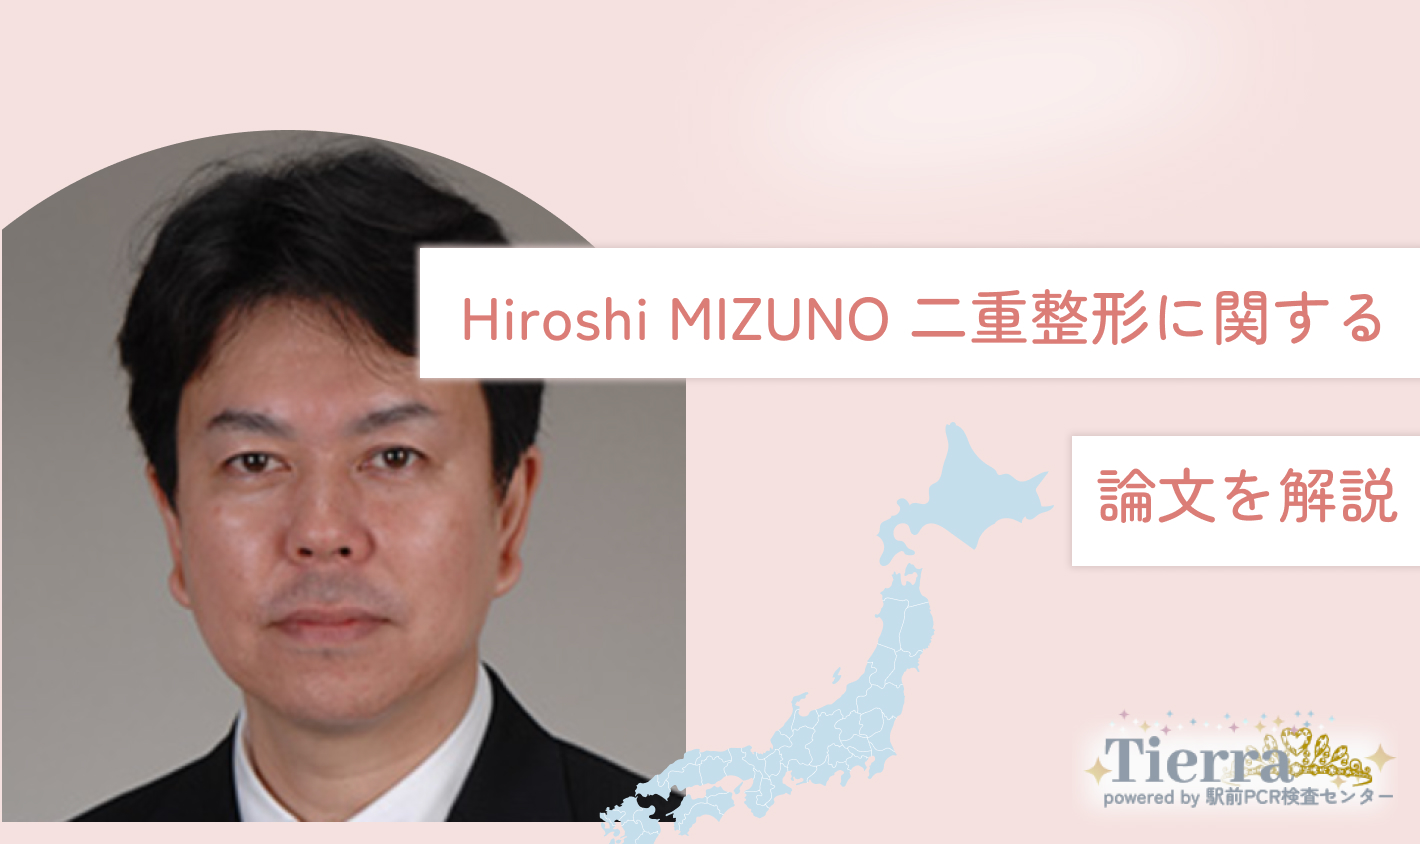 Hiroshi MIZUNO 二重整形に関する論文を解説